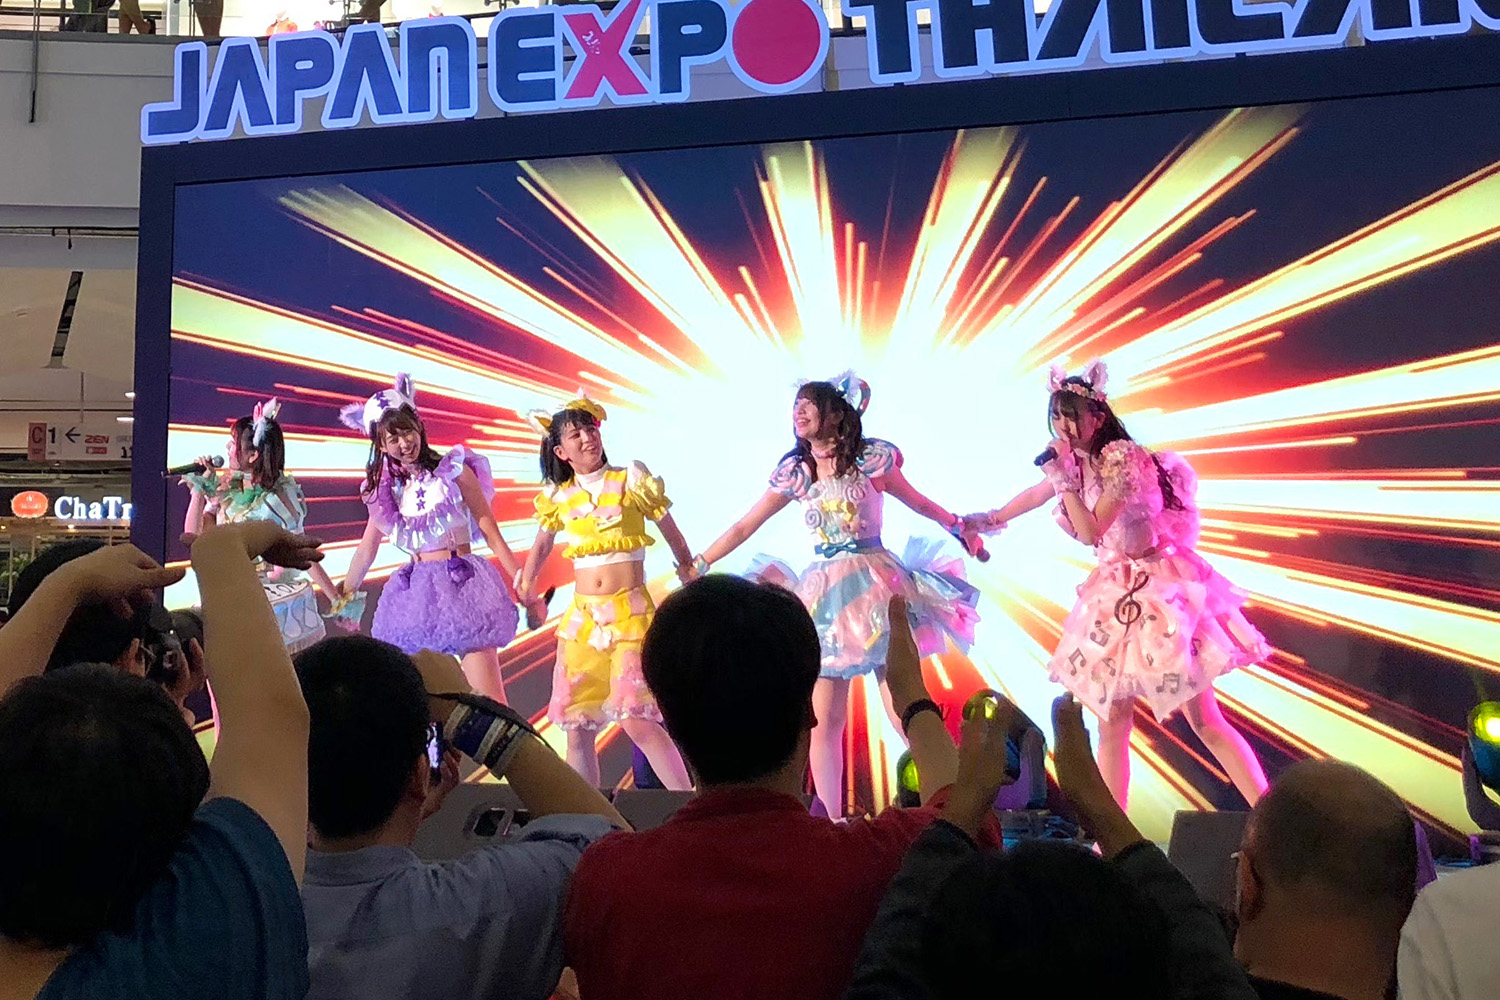 NekoPOP-Japan-Expo-Thailand-2019-B6888-1500